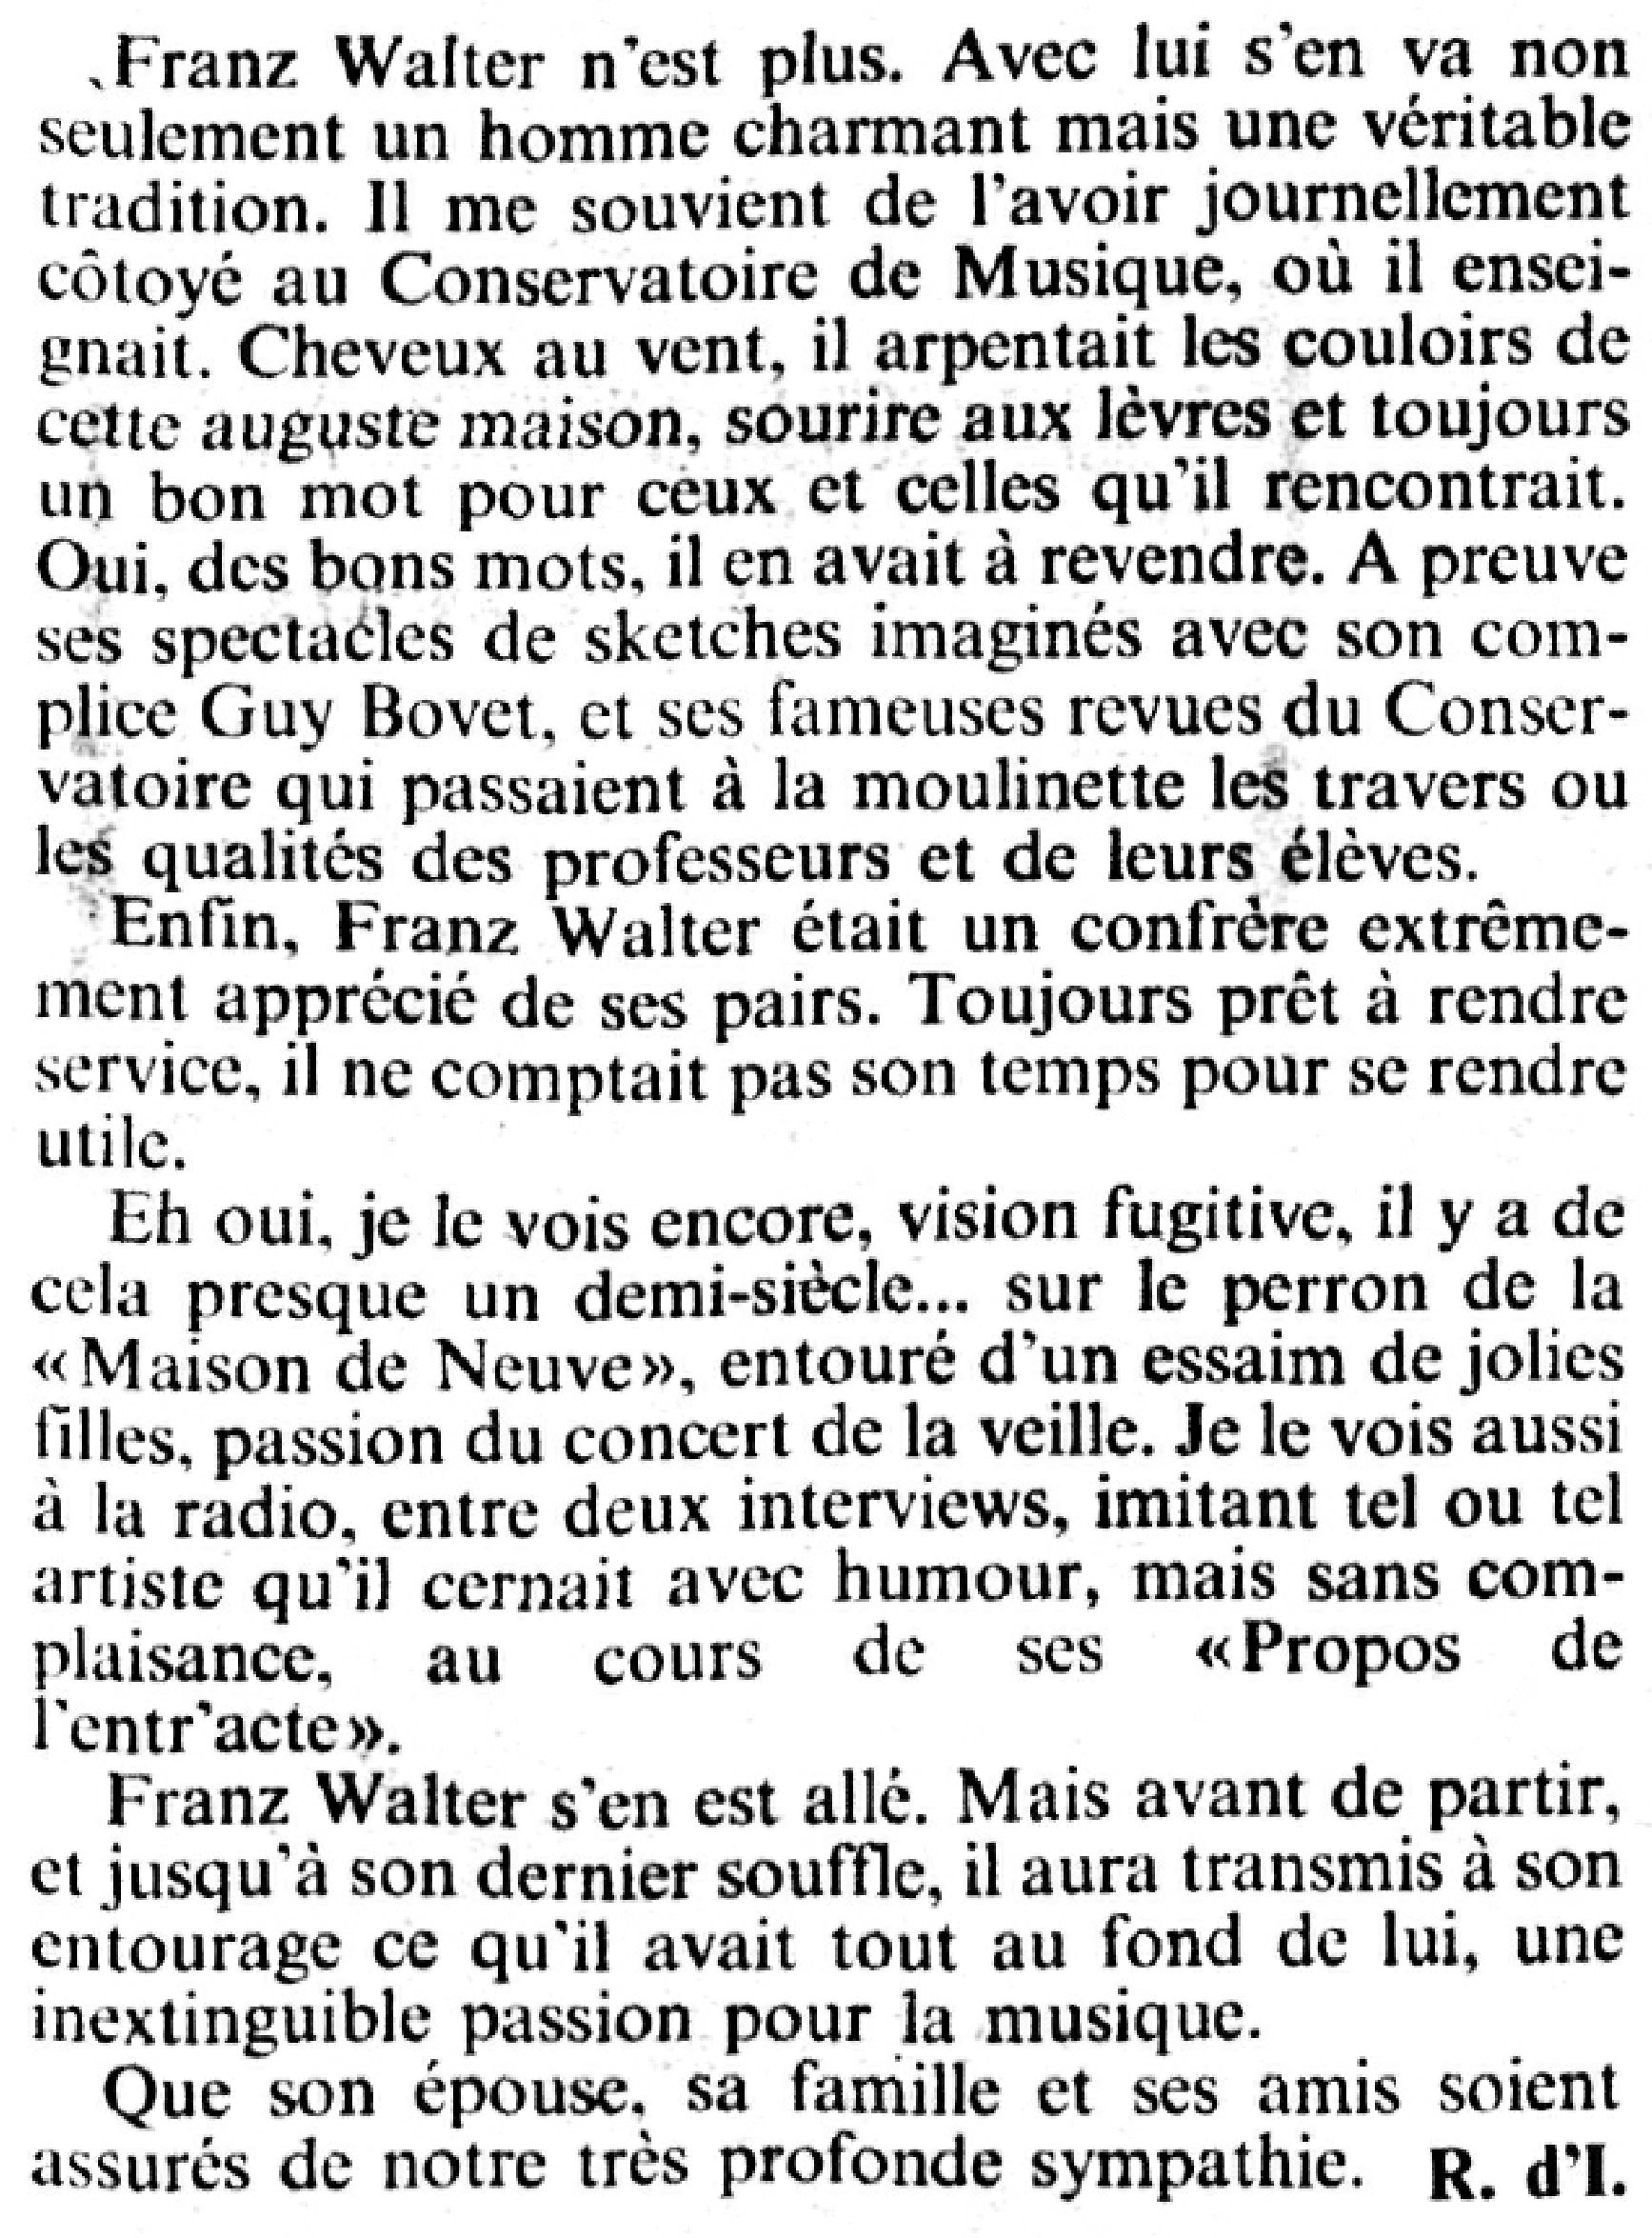 Walter Franz JDG 1984 10 02 page 23 R d I b